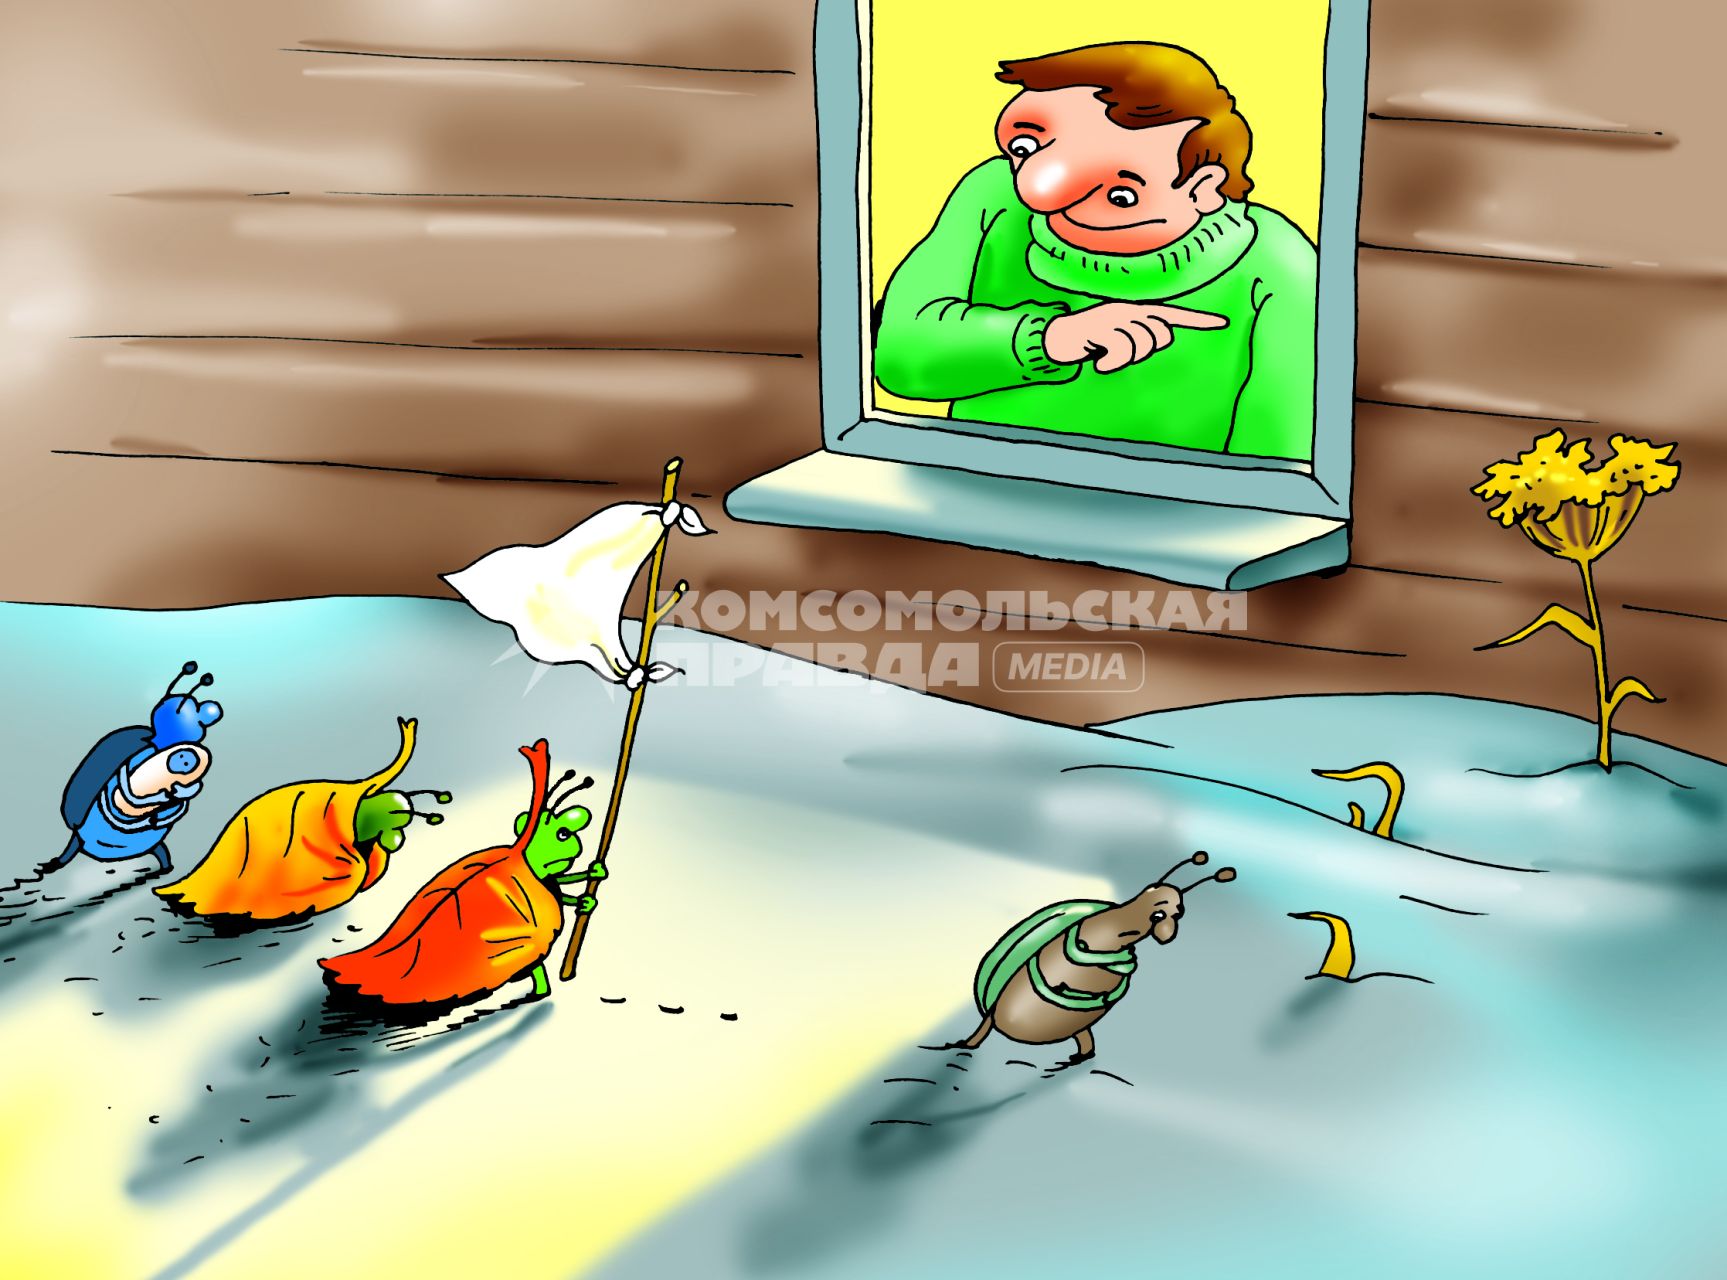 Карикатура на тему избавления от насекомых на дачном участке.